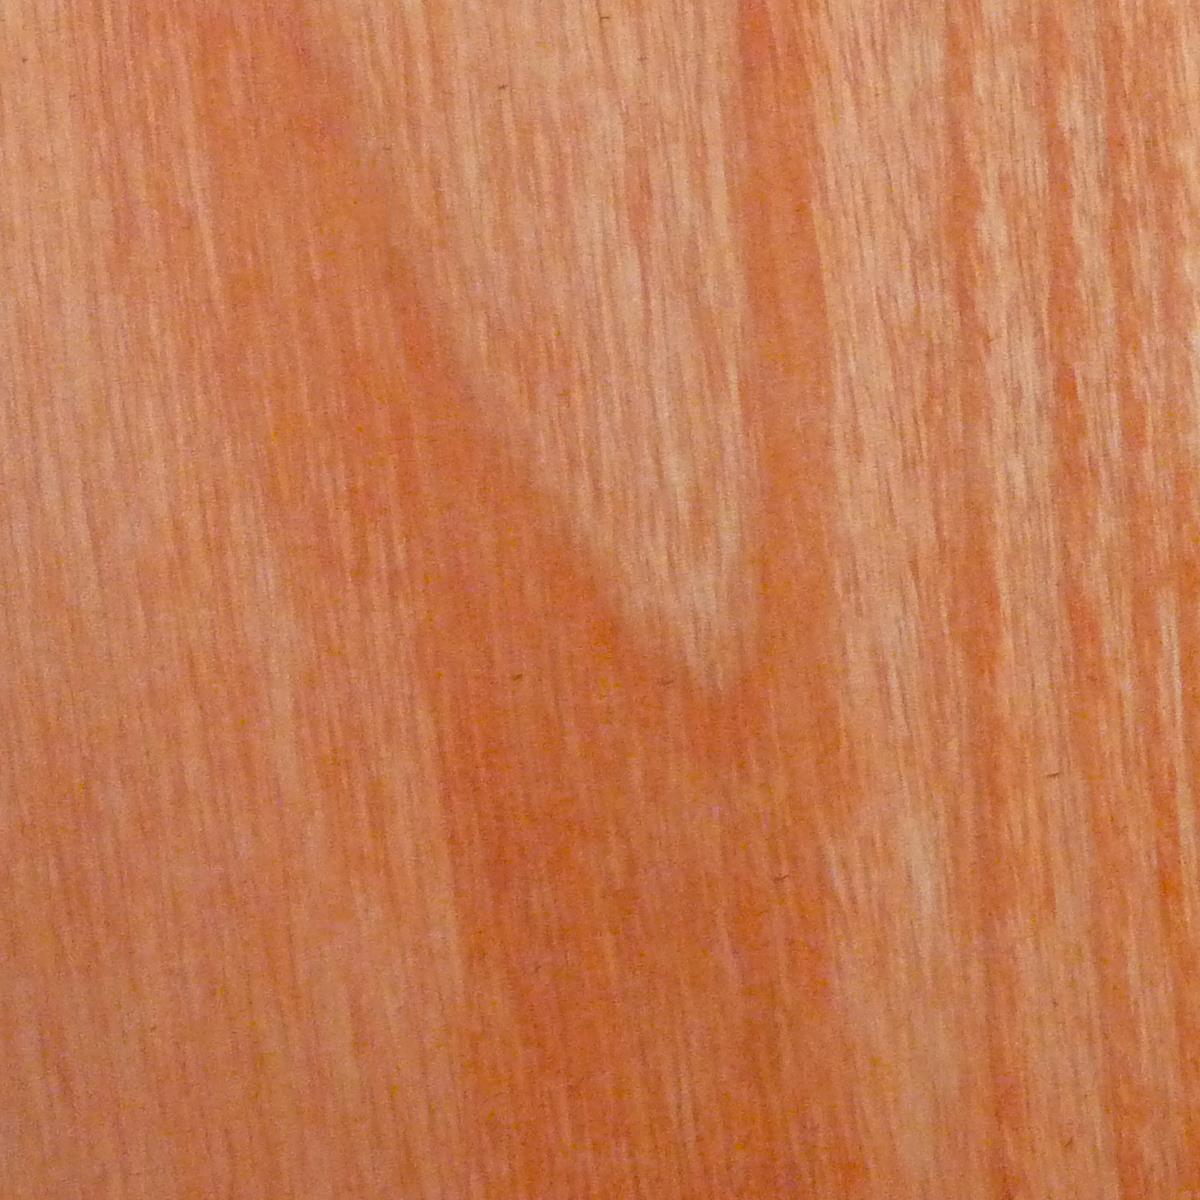 dartfords Light Orange Interior Spirit Based Wood Dye - 1 litre Tin